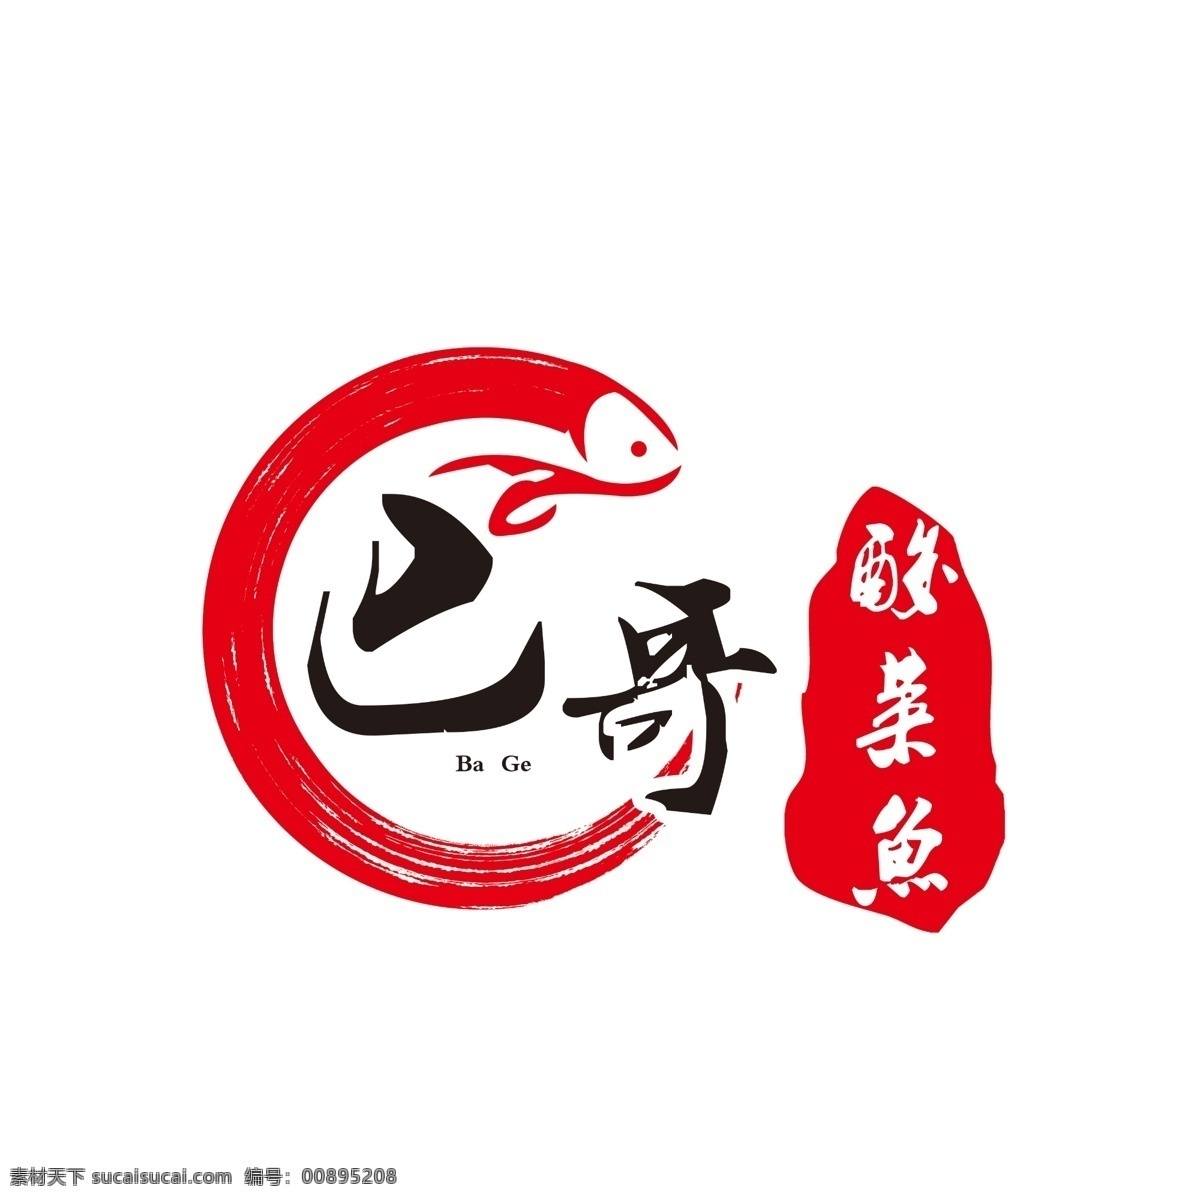 酸菜鱼 特色 特色酸菜鱼 标志 酸菜鱼标志 logo 鱼标志